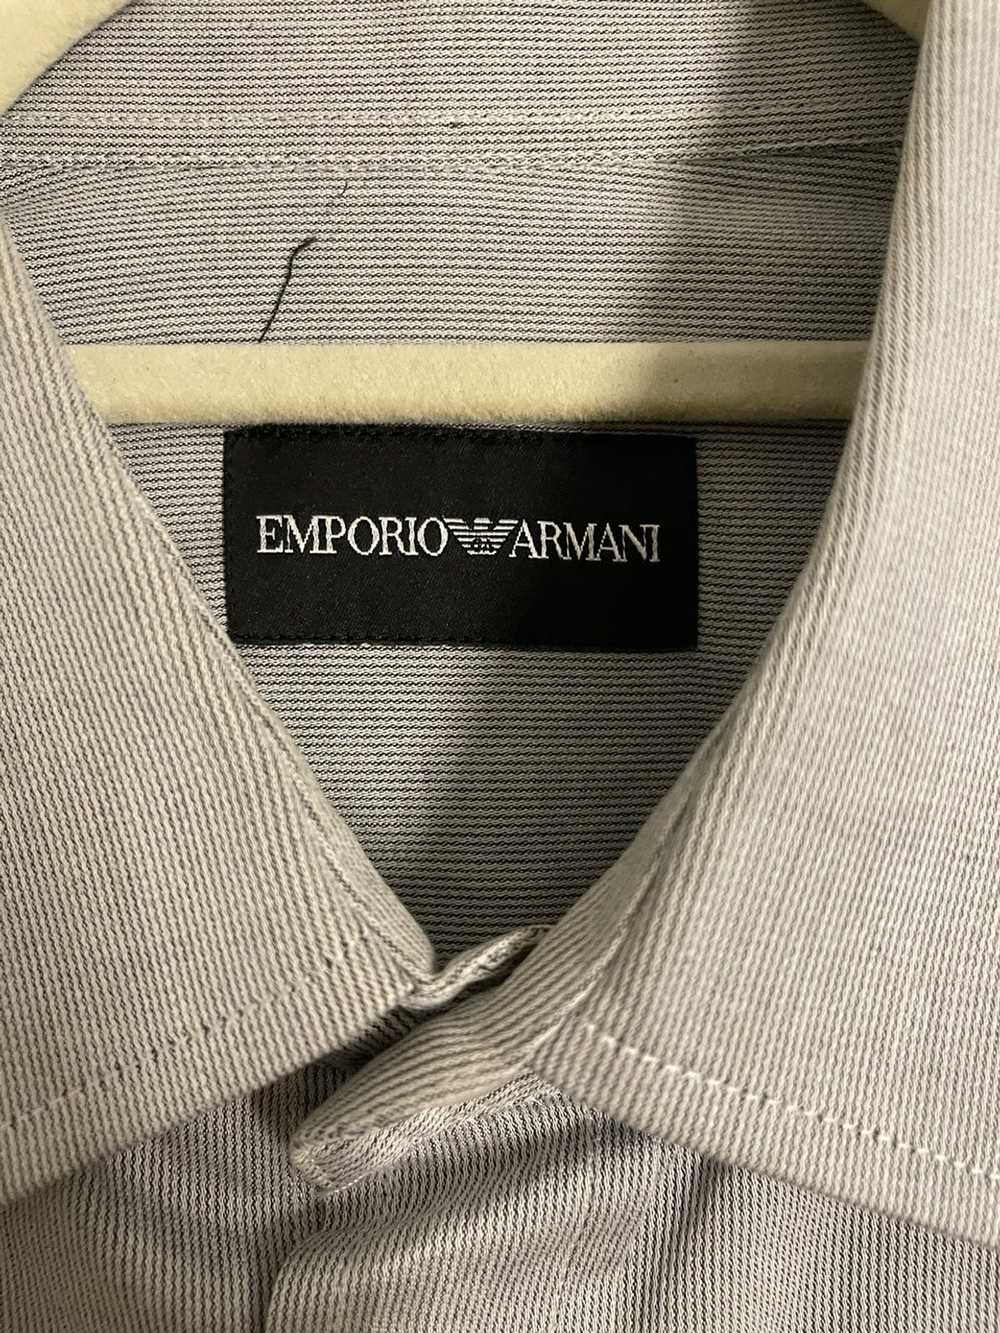 Emporio Armani Emporio Armani Button Down Dress S… - image 2